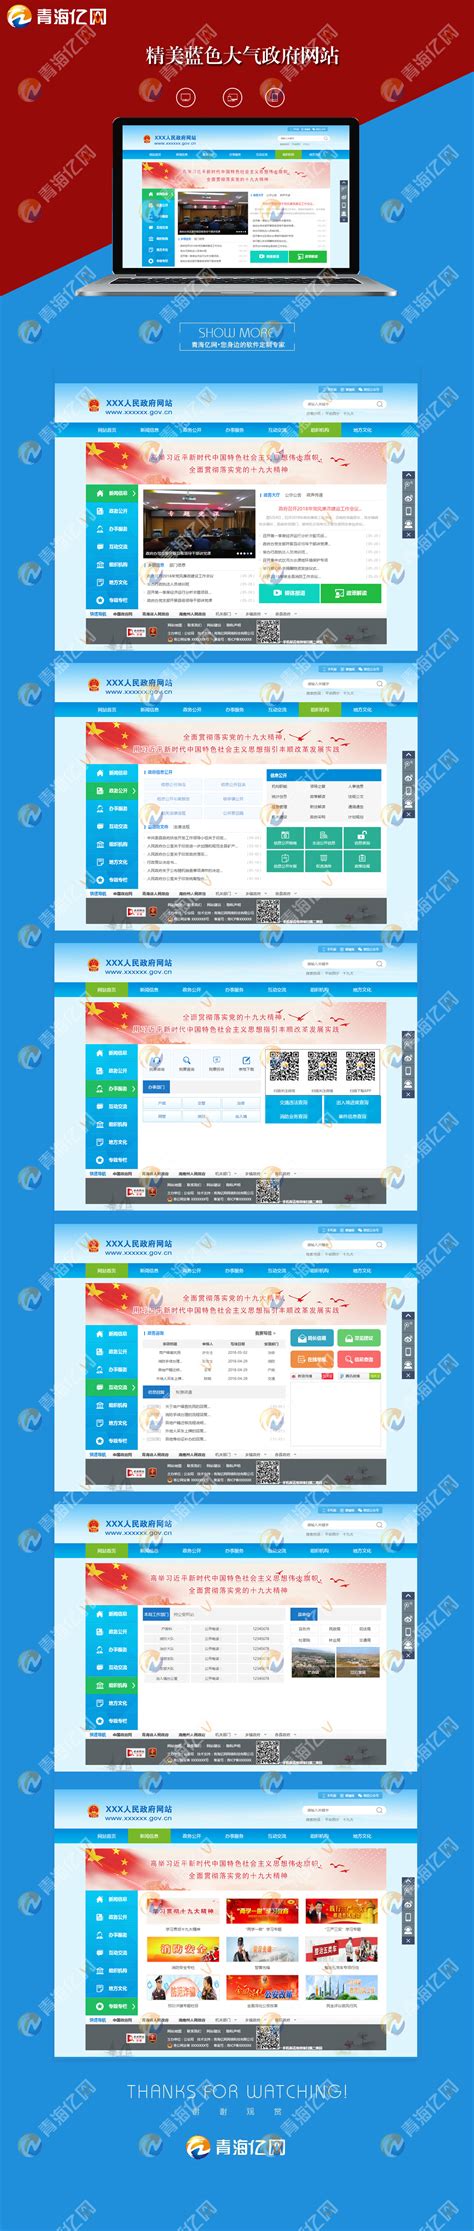 青海省投资项目在线审批监管平台官方网站